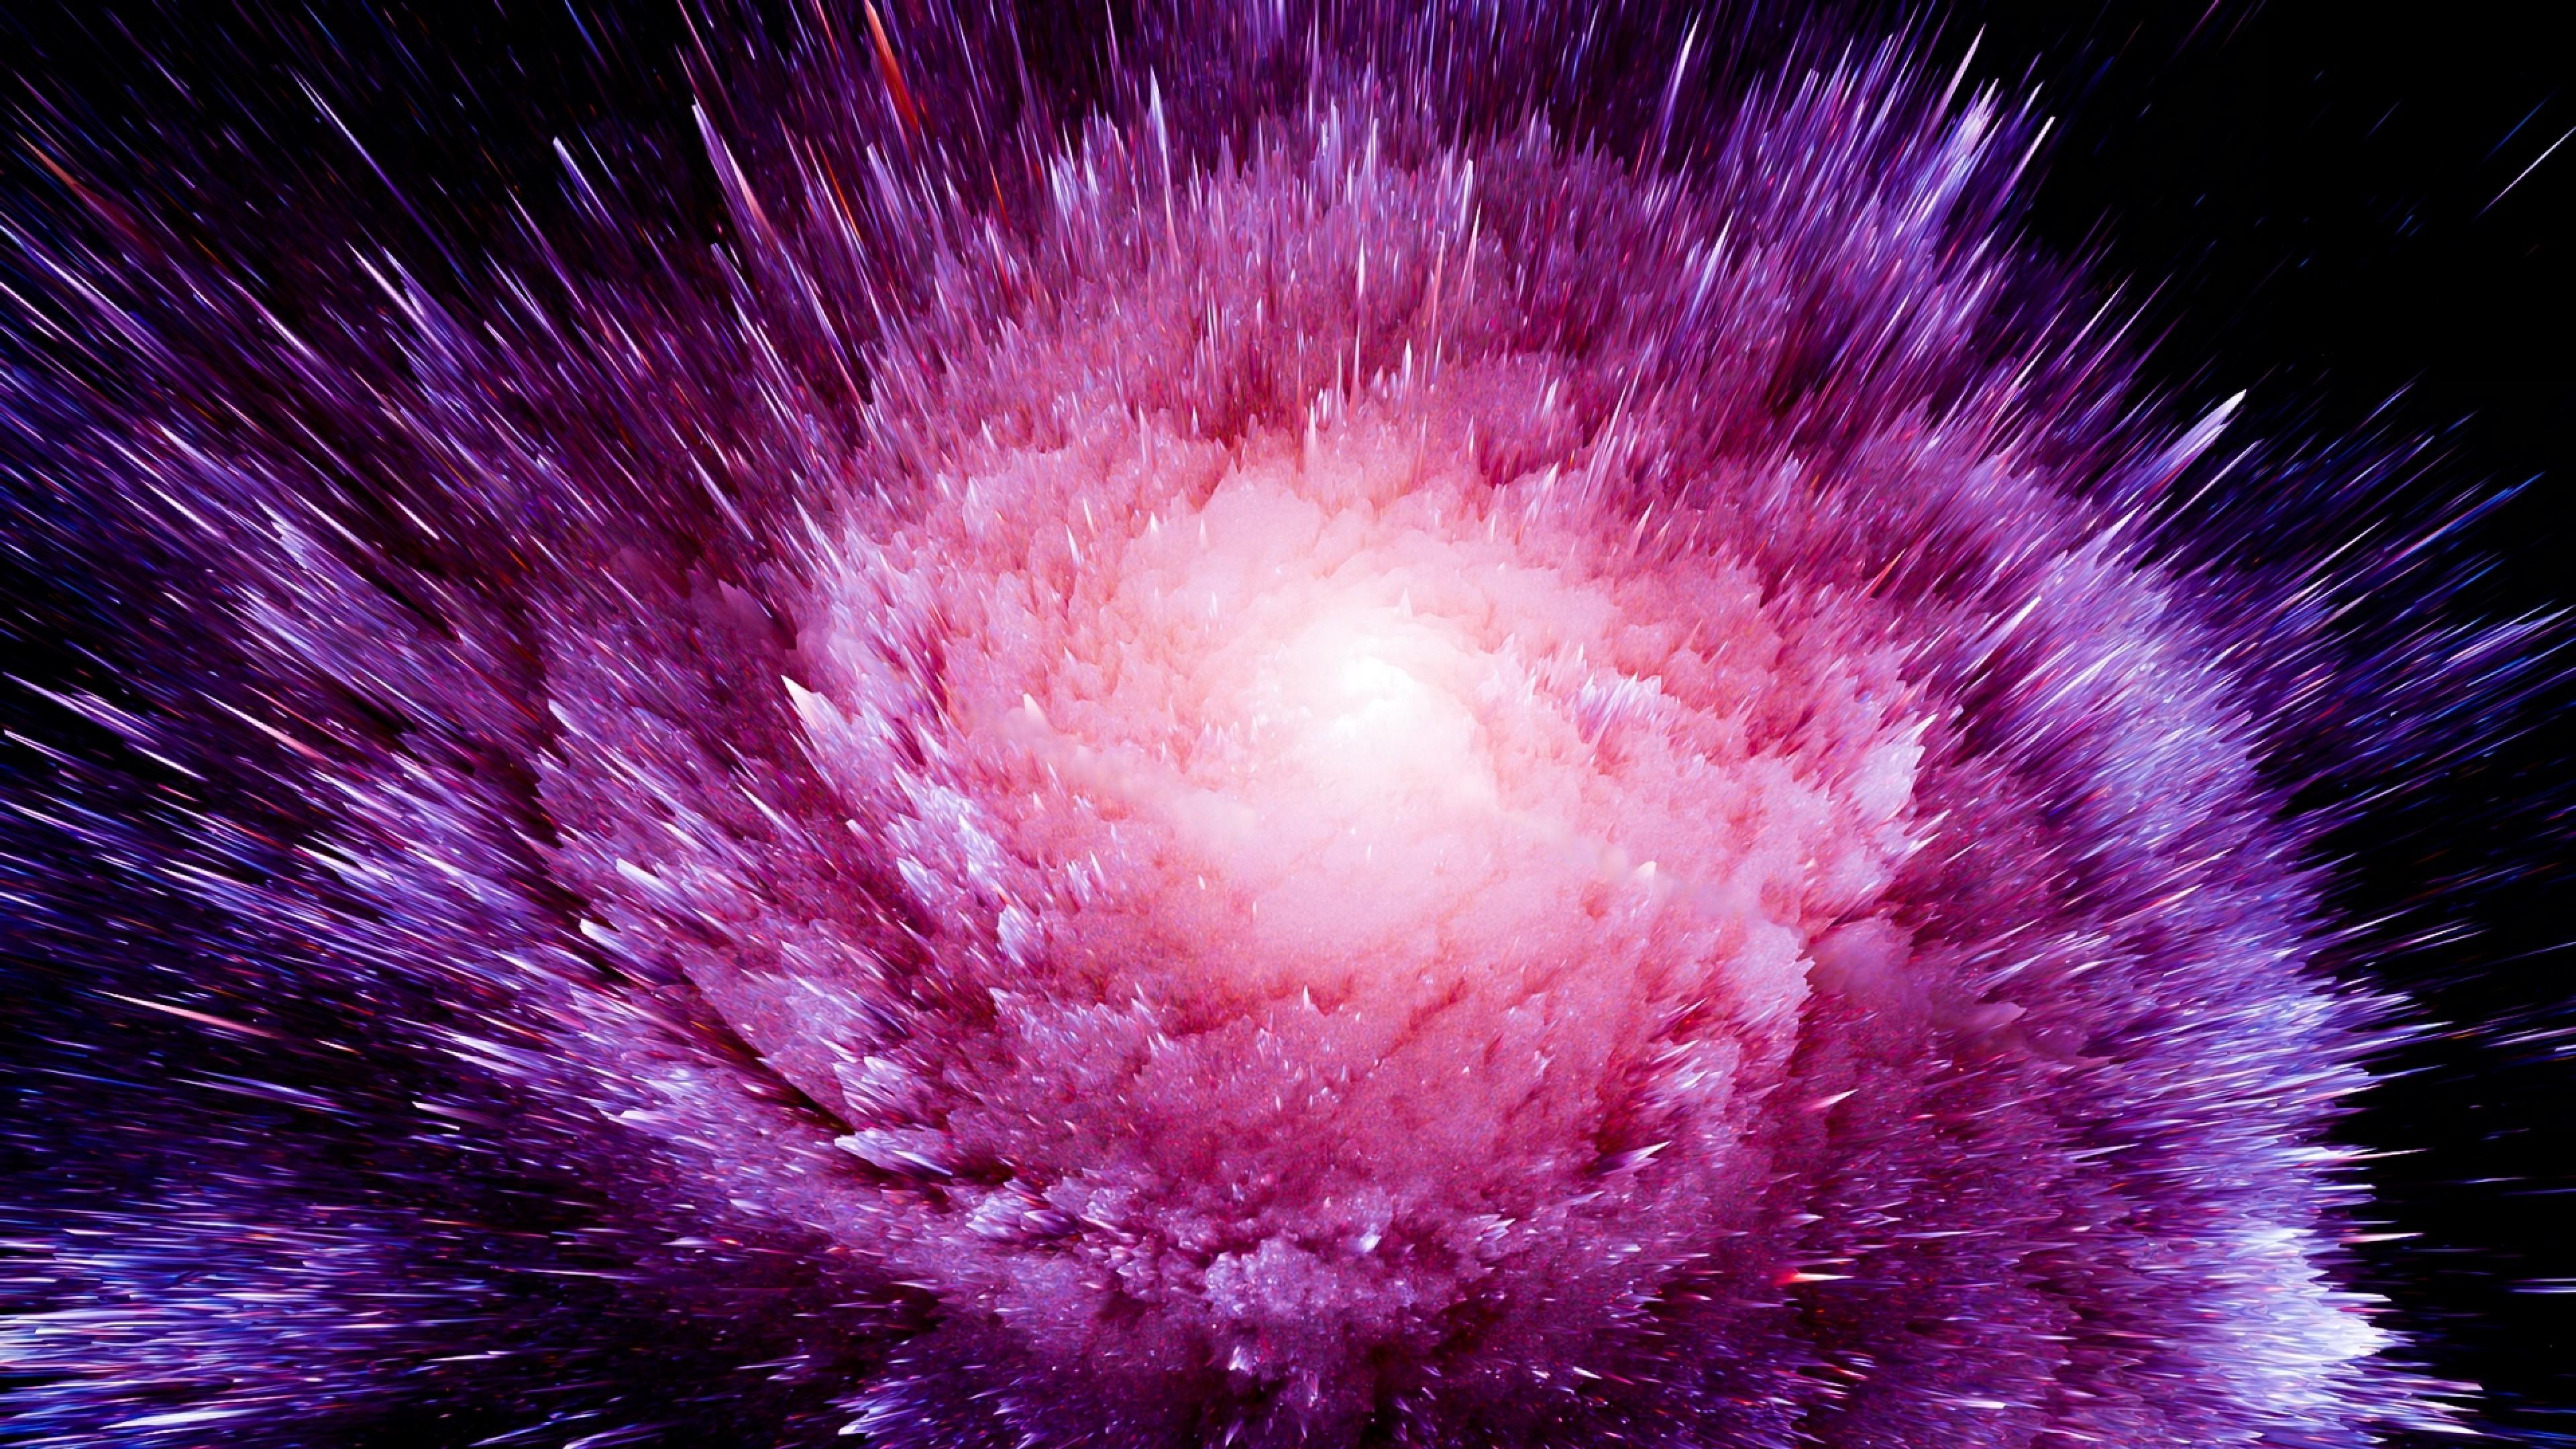 Cosmic explosion HD Wallpaper 4K Ultra HD Wallpaper